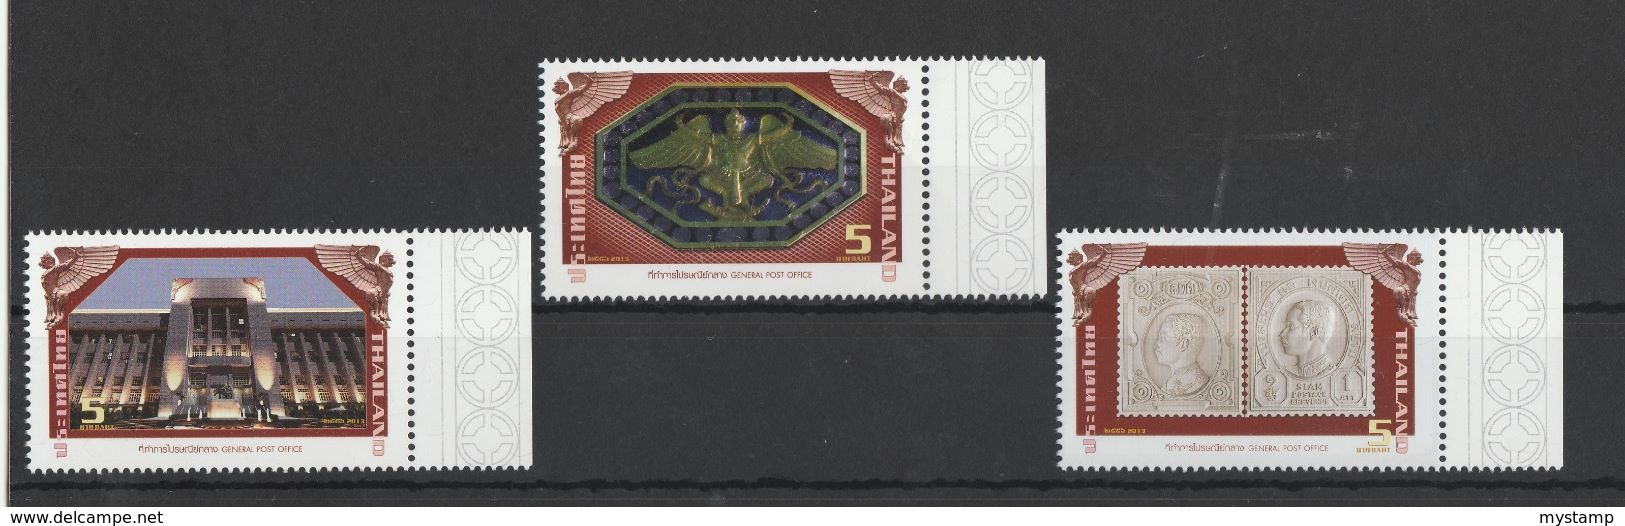 Thailand Stamp 2013 Complete Set Mint MN - Thailand